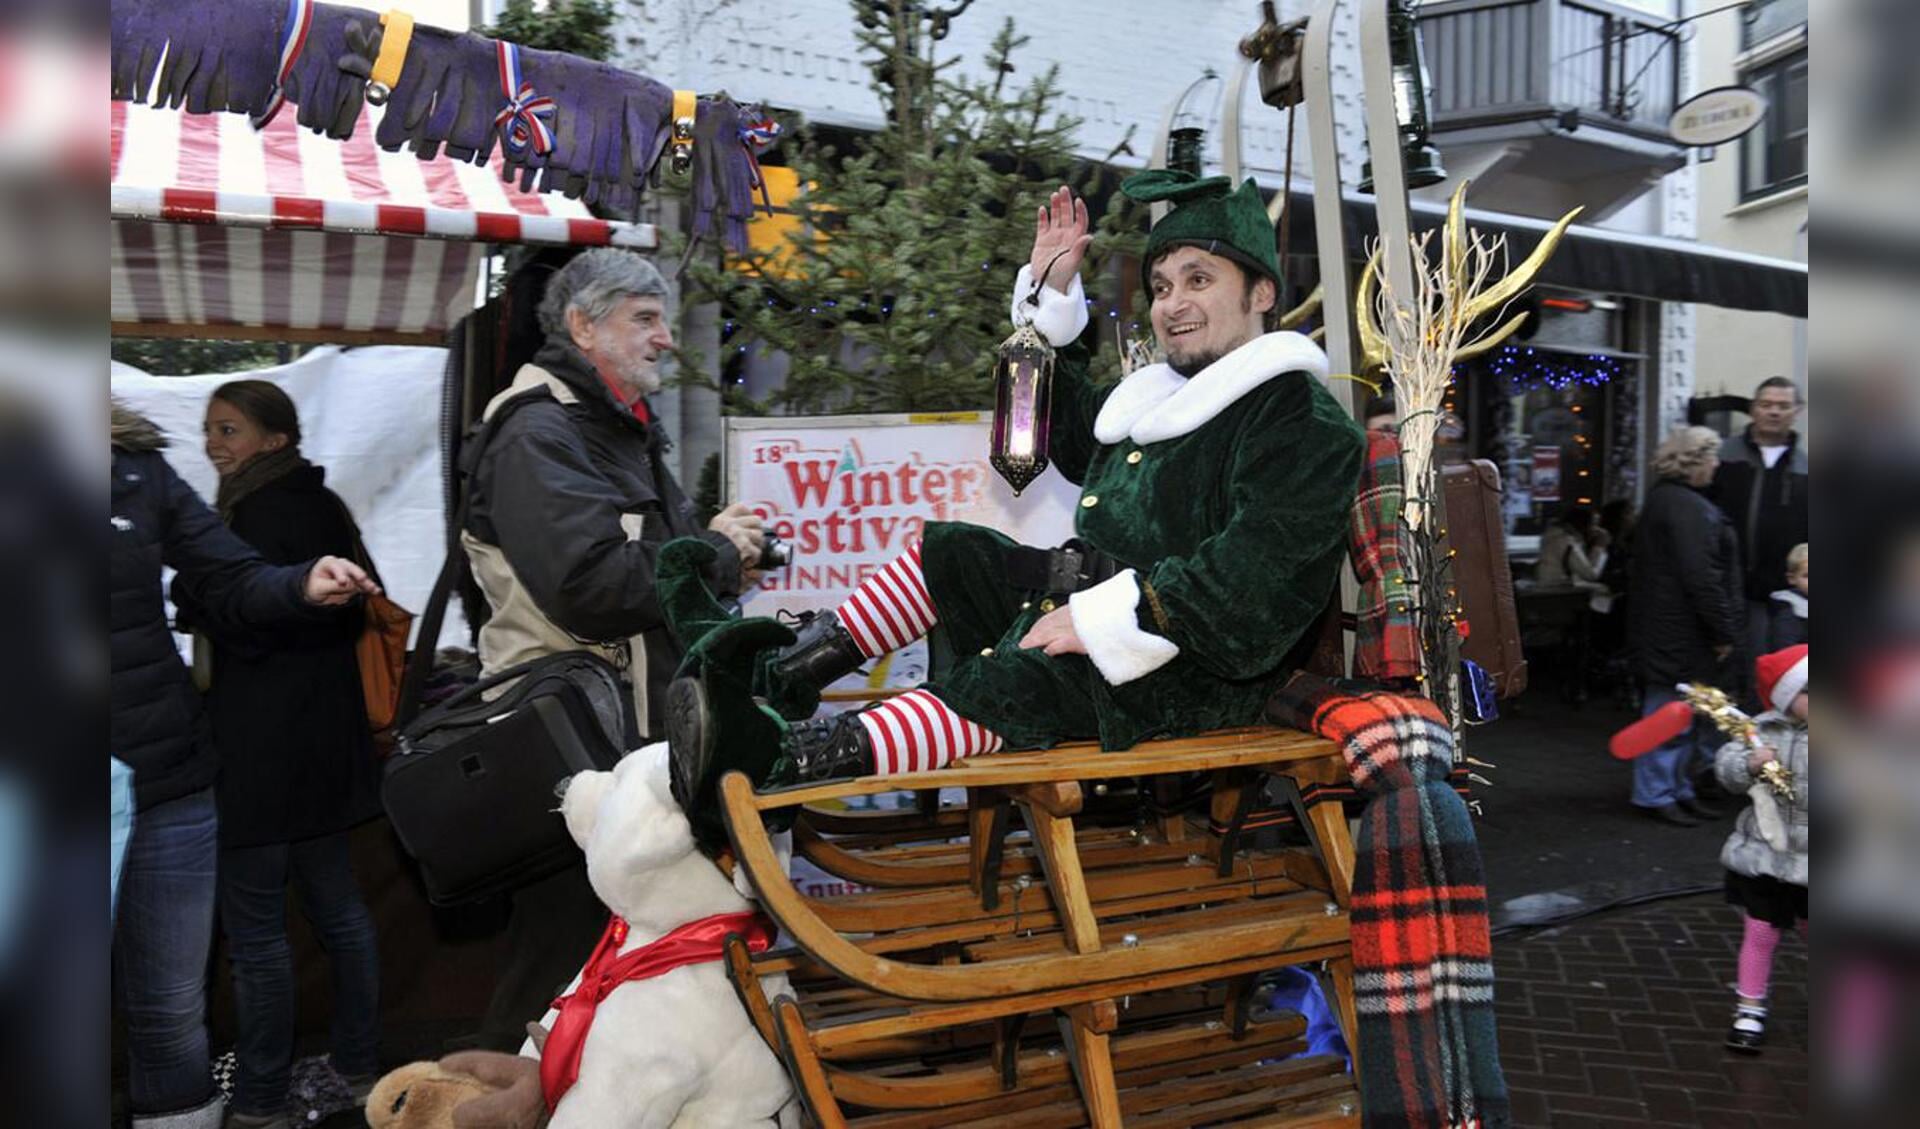 Kerst, muziek, kinderen, kraampjes en Glühwein. Veel sfeer tijdens de Kerstmarkt Ginneken 2011. foto Janet Olde Wolbers.